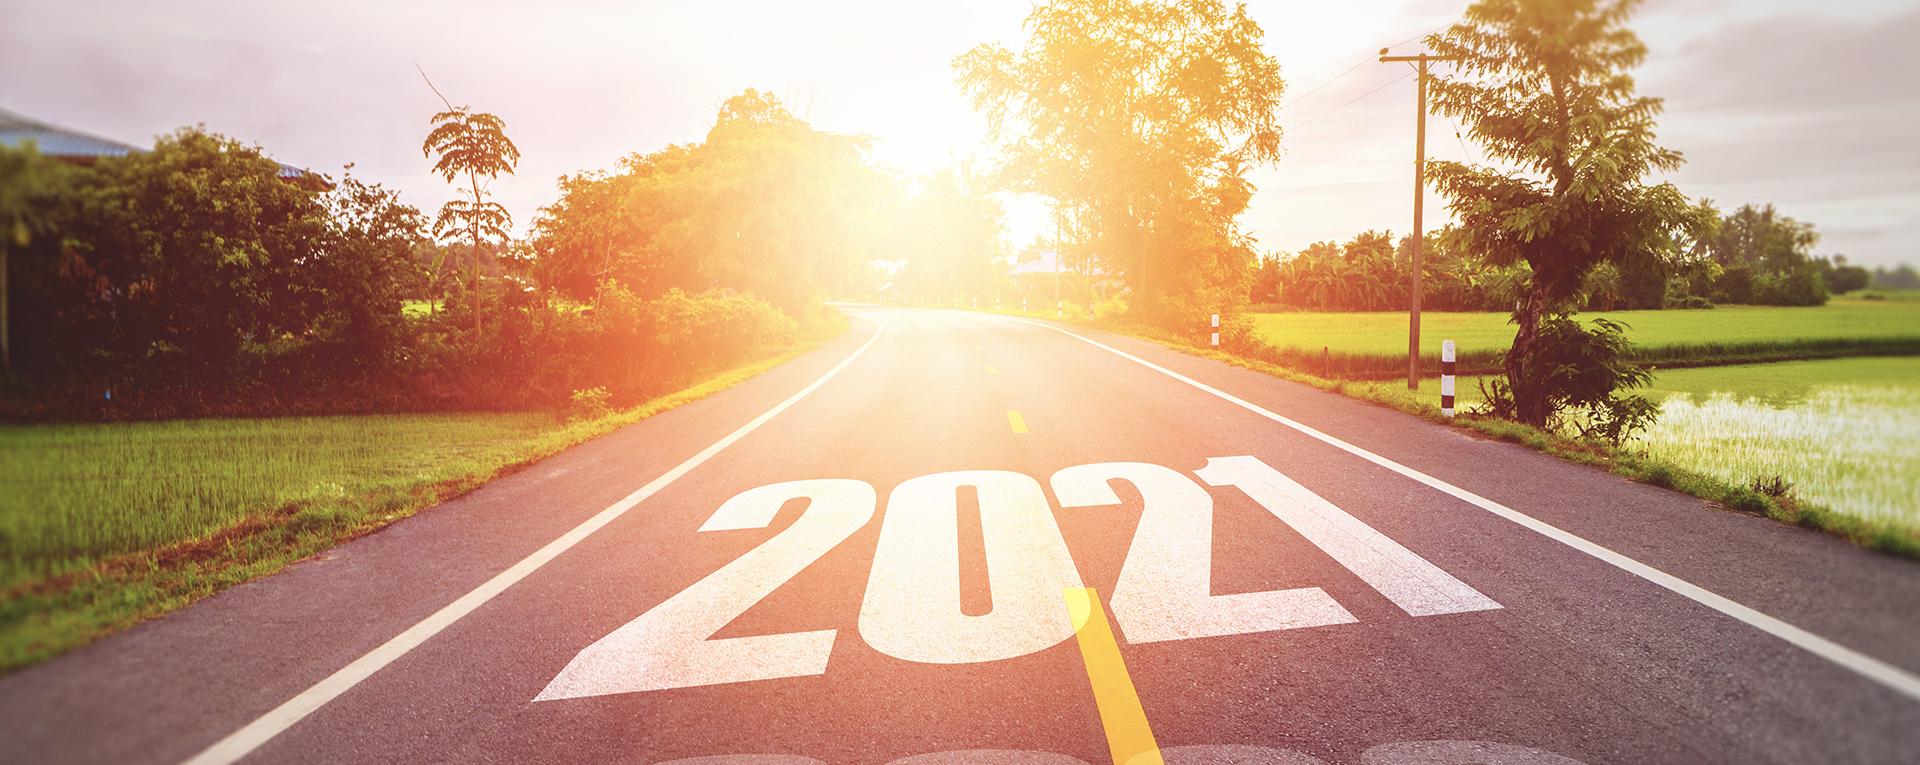 Tie, jossa vuosiluku 2021